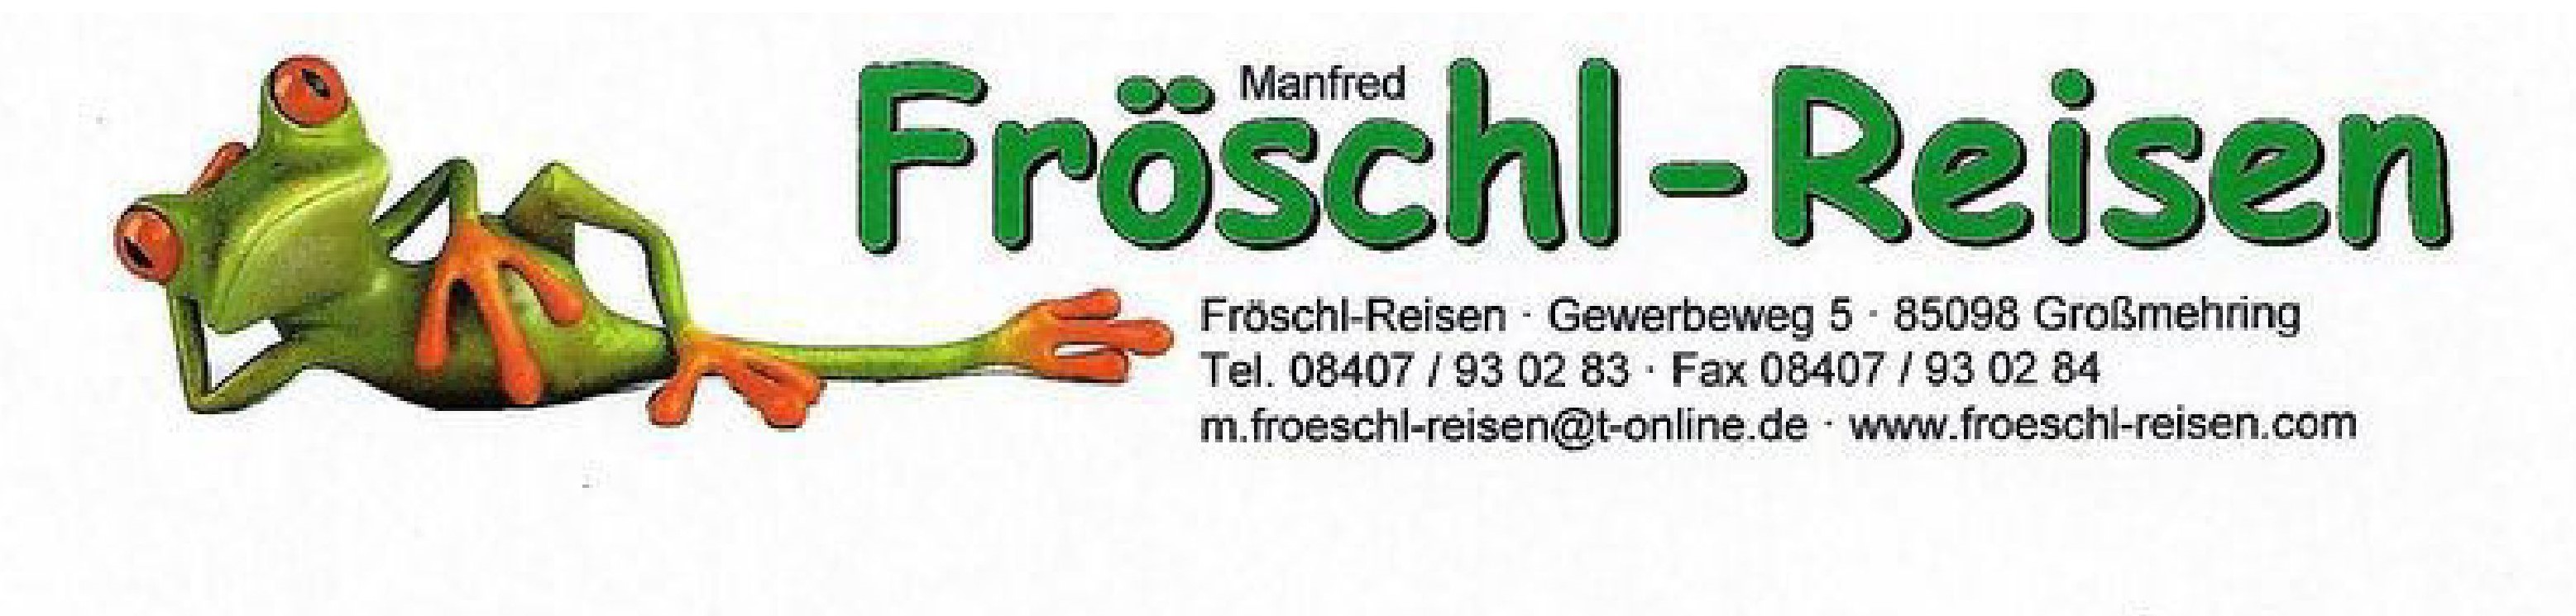 Fröschl-Reisen 